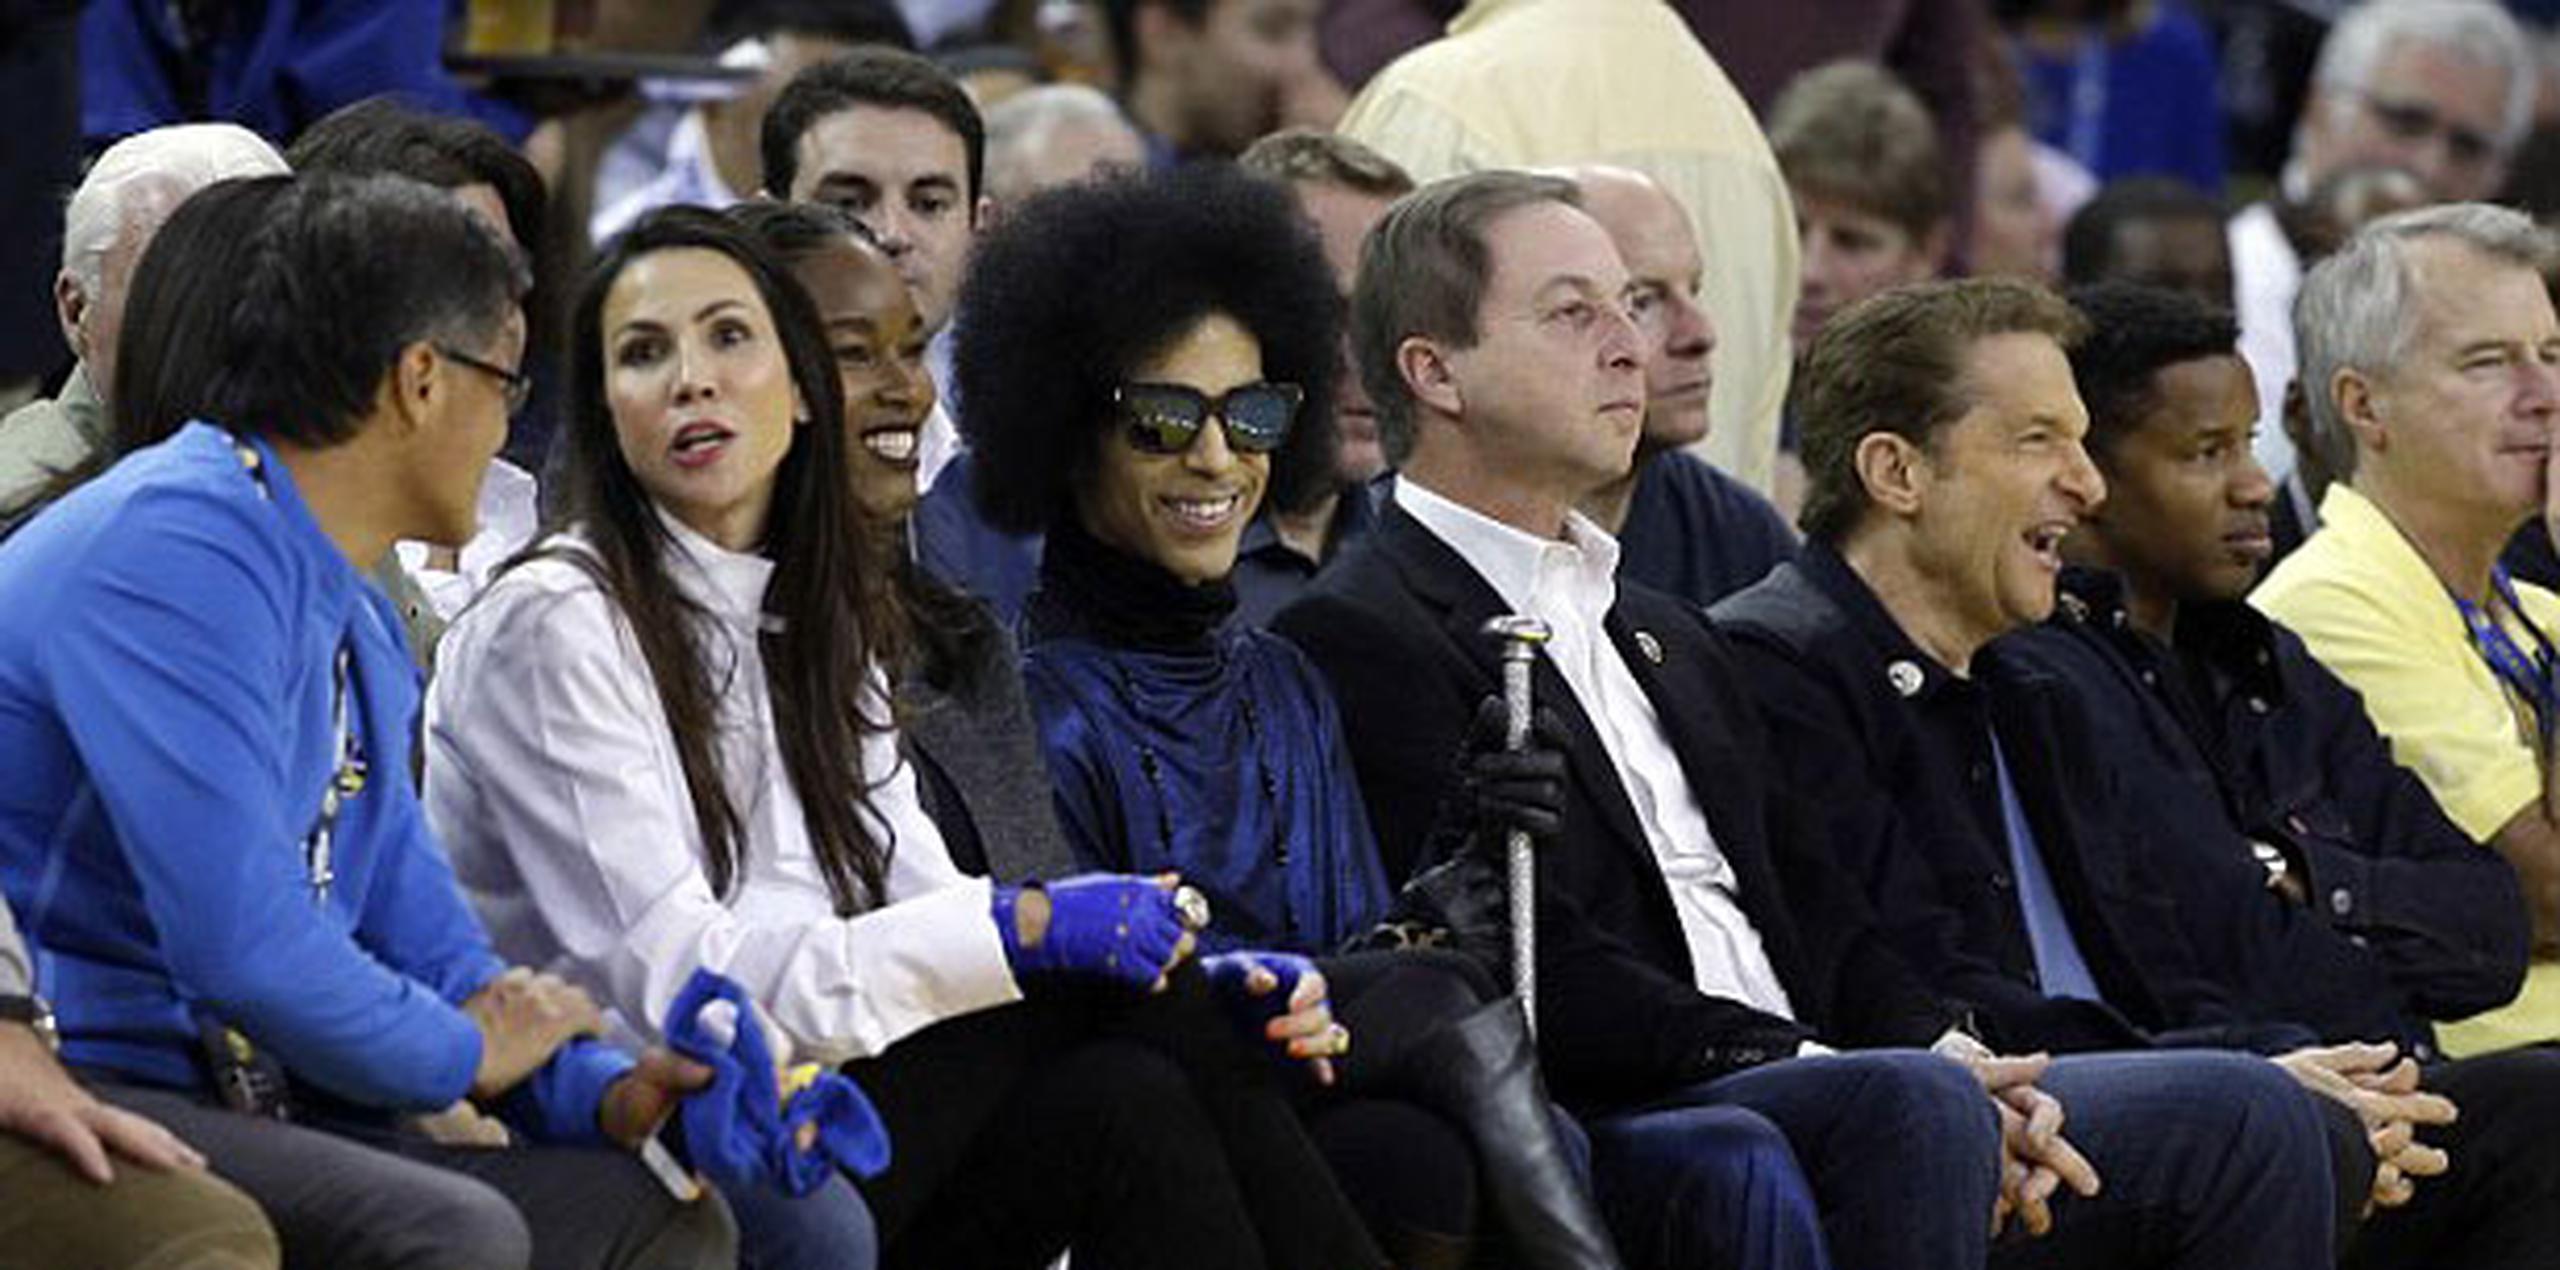 Hace tan solo unas semanas, Prince asistió al encuentro entre los Warriors de Golden State y el Thunder de Oklahoma. (Archivo)